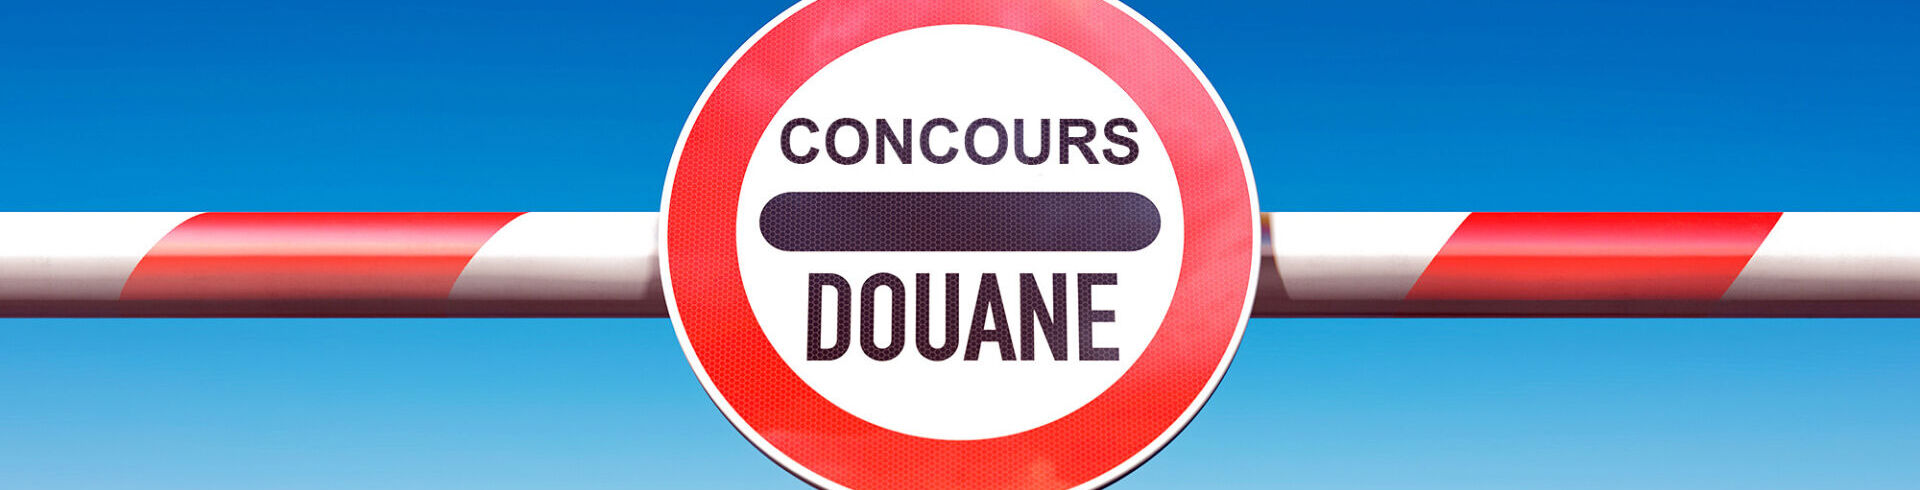 Concours douanier France